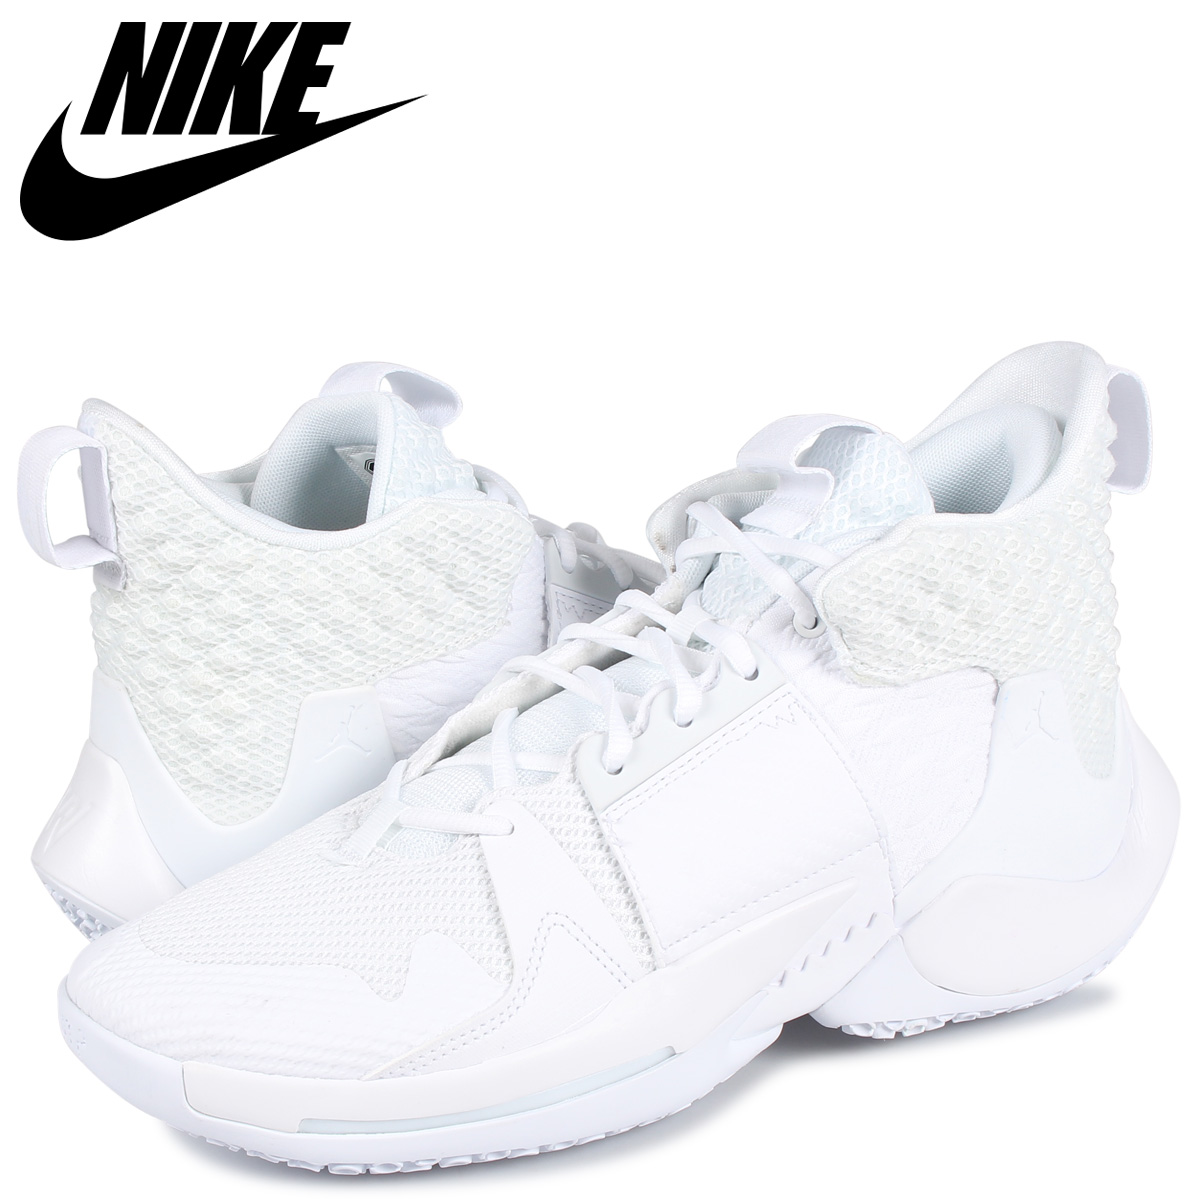 楽天市場 Nike ナイキ ジョーダン スニーカー メンズ Jordan Why Not Zer0 2 ホワイト 白 Bv6352 101 Zzi 返品不可 シュガーオンラインショップ